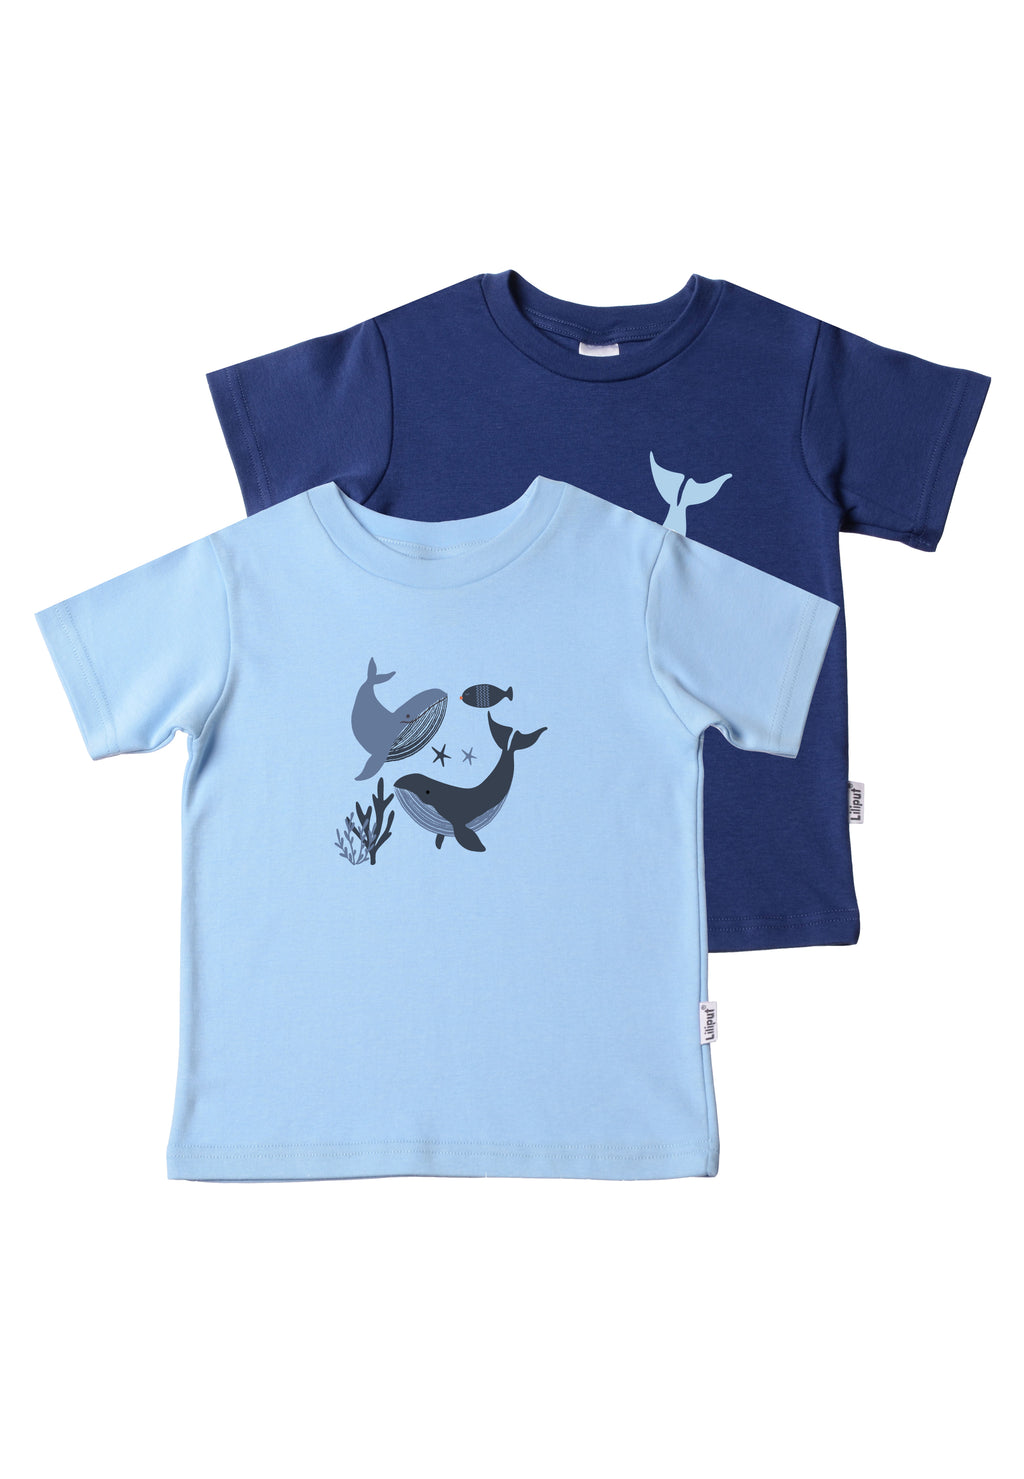 Doppelpack Kinder T-Shirts aus Bio Baumwolle in hellblau und dunkelblau mit Wal Prints